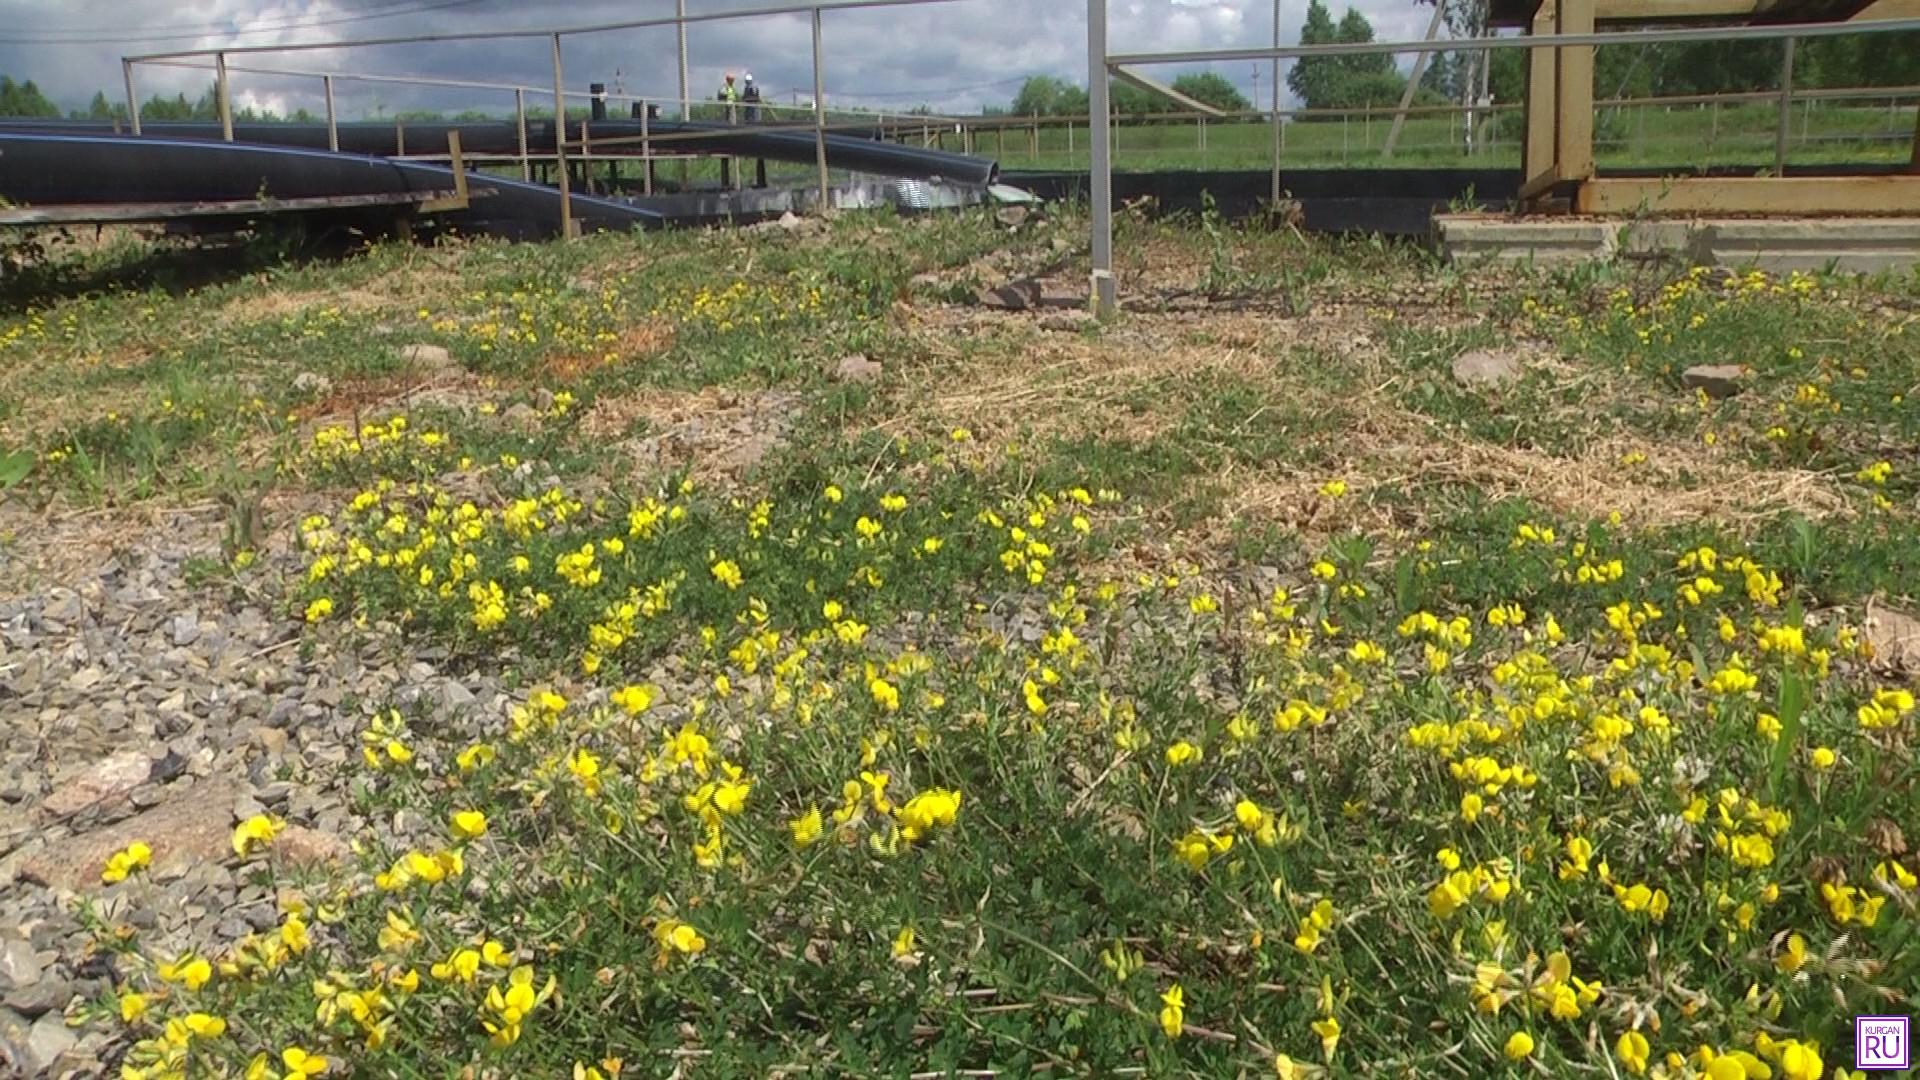 У резервуара (на заднем плане), в который из скважин поступает соляной раствор с ураном, растут трава и цветы. Фото Информационного агентства «KURGAN.RU».